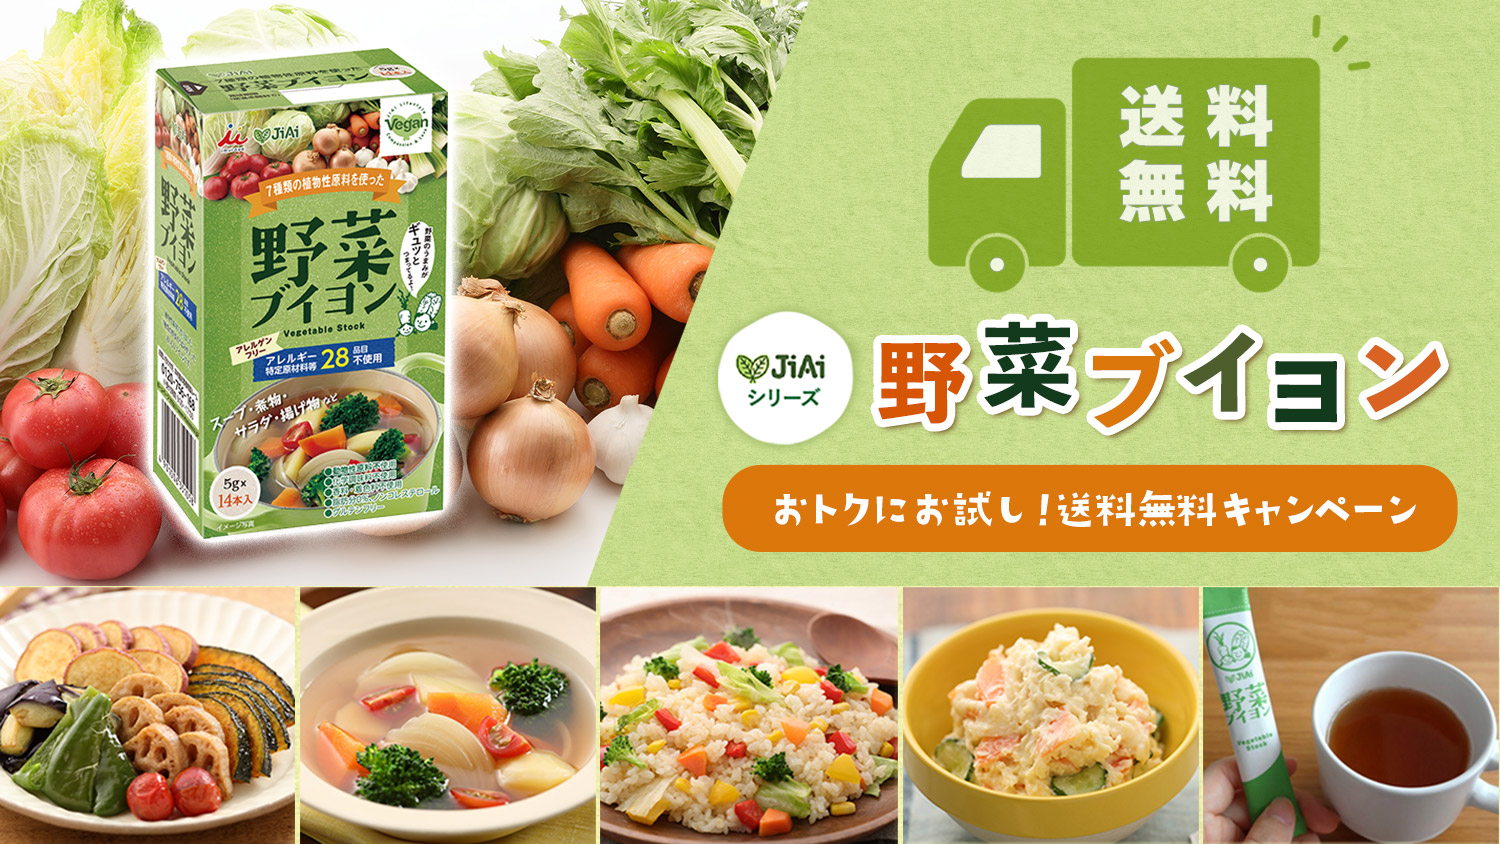 【先着50名様限定】JiAi野菜ブイヨンおトクにお試し！送料無料キャンペーン